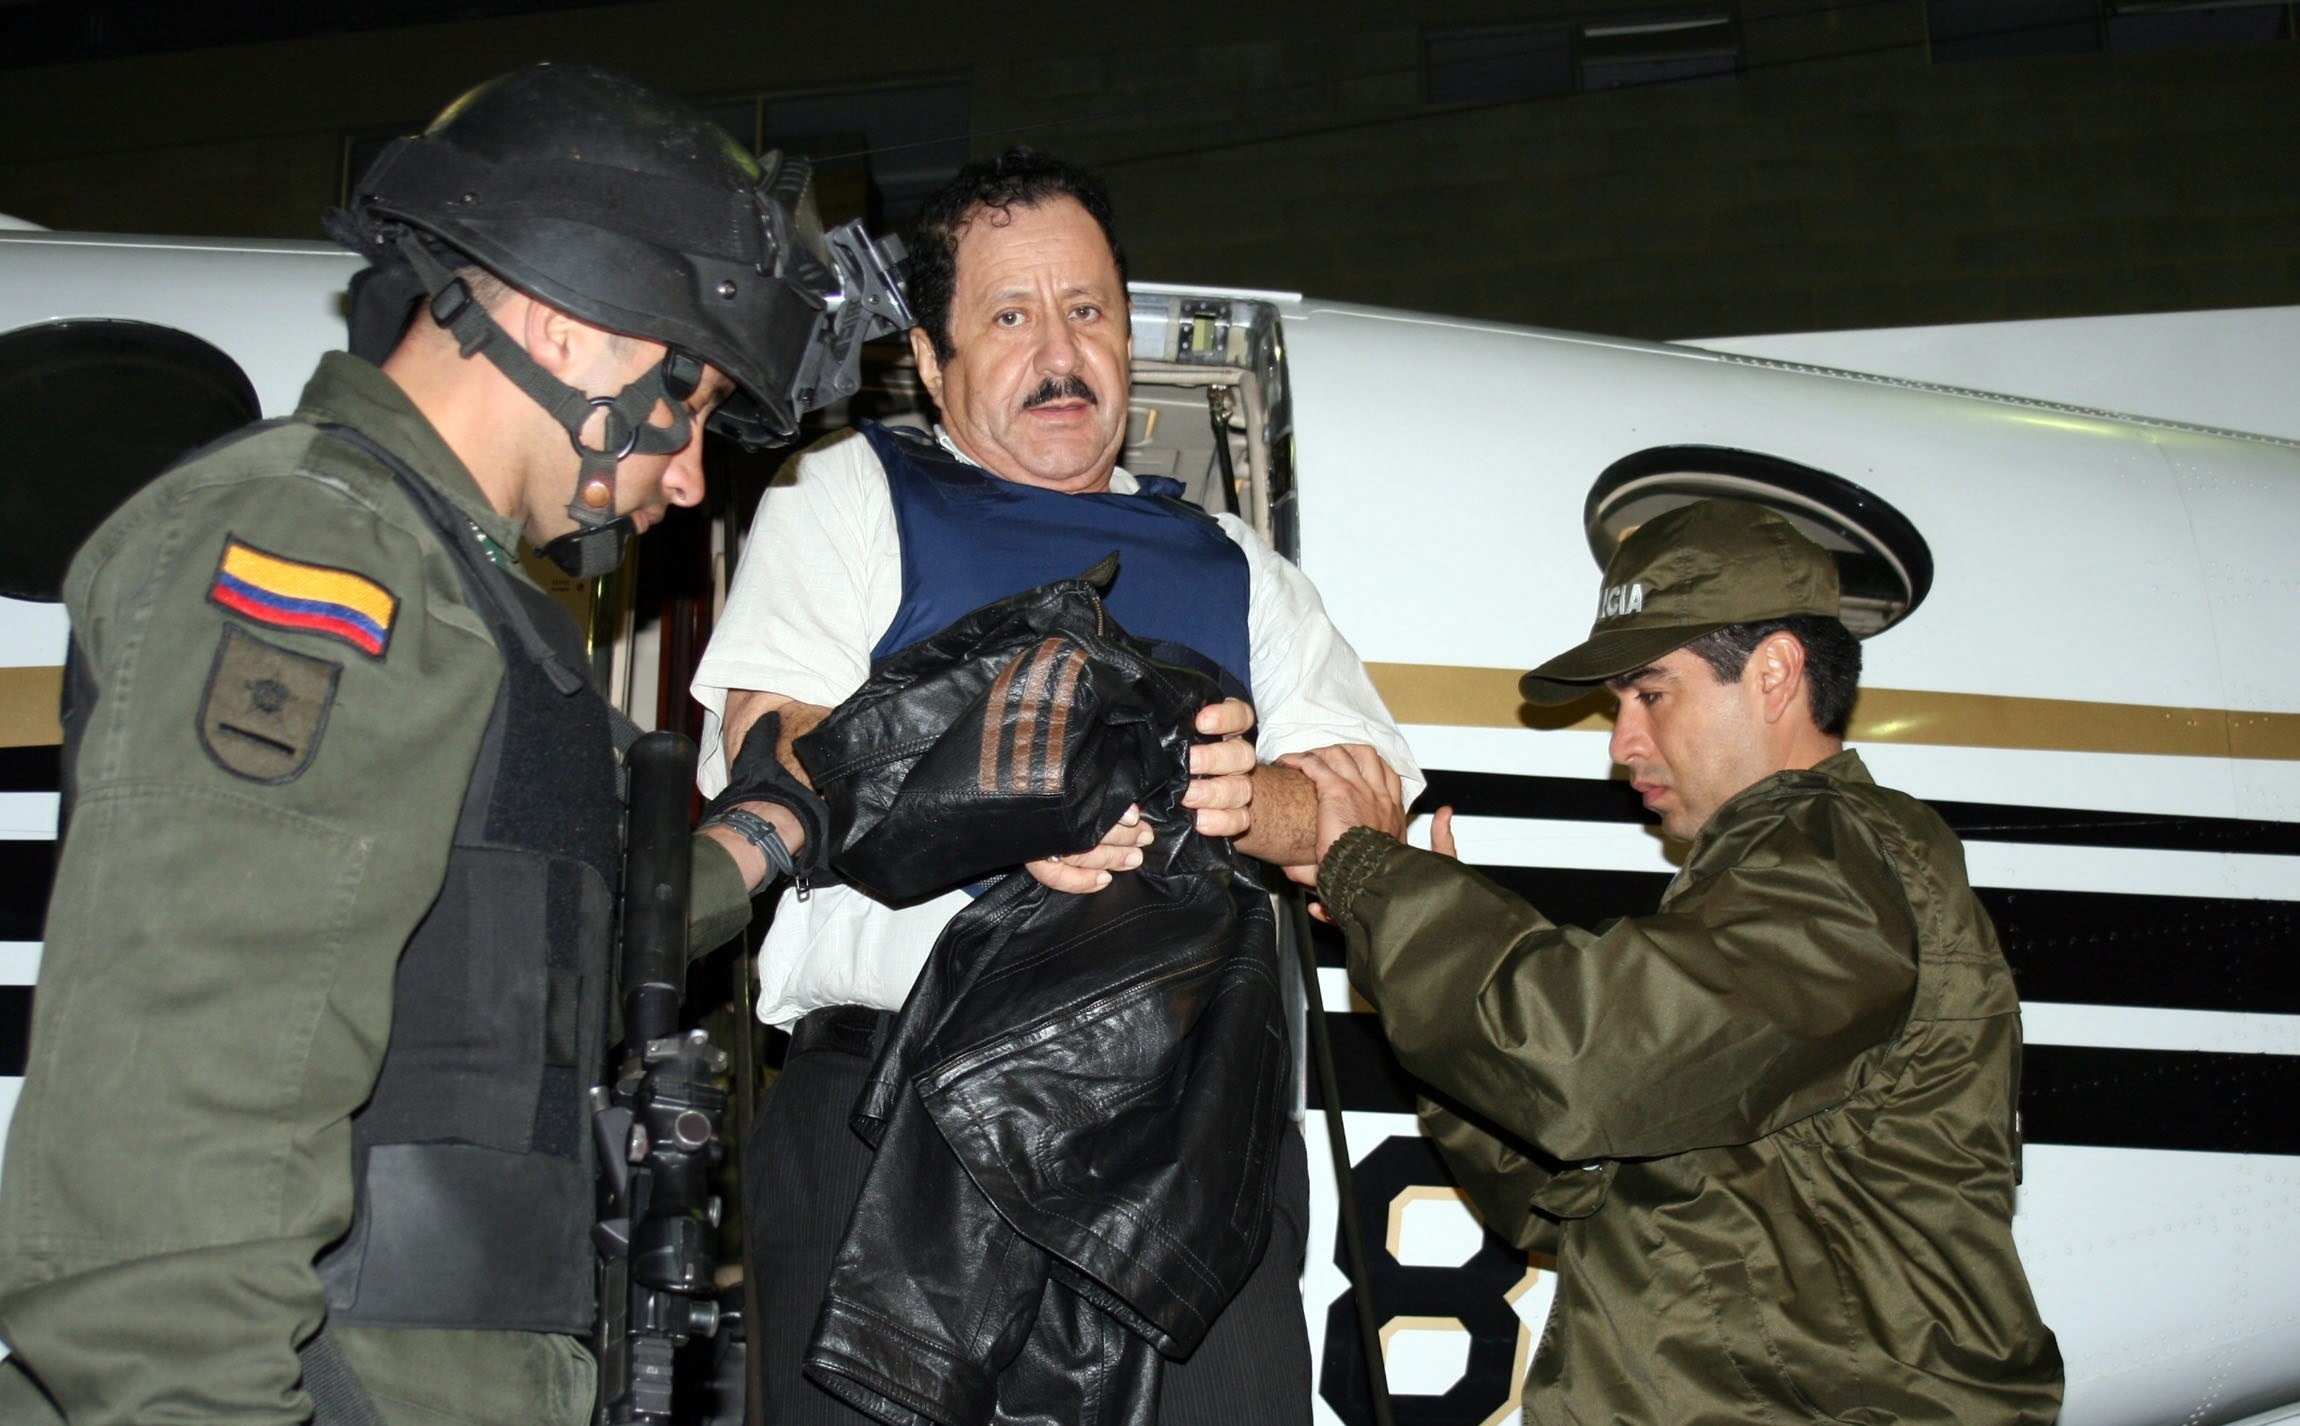 Fotografía de archivo cedida por la Policía Nacional de Colombia que muestra a varios agentes mientras custodian al exjefe paramilitar Hernán Giraldo antes de su extradición a Estados Unidos, el 13 de mayo de 2008, en Bogotá, Colombia. (Foto Prensa Libre: EFE)